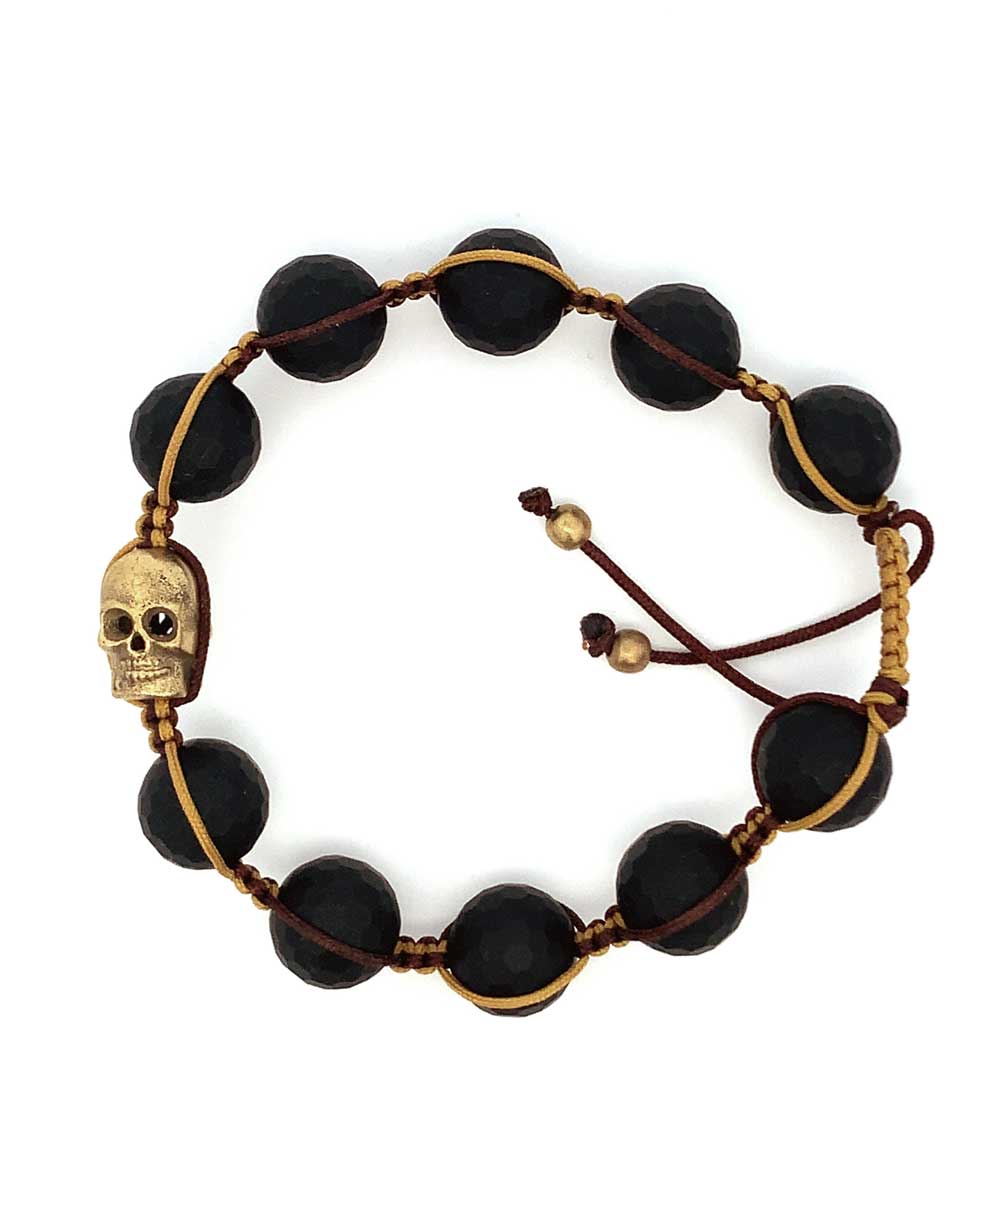 Men's Black Onyx Tibetan Skull Adjustable Bracelet - Bracelets